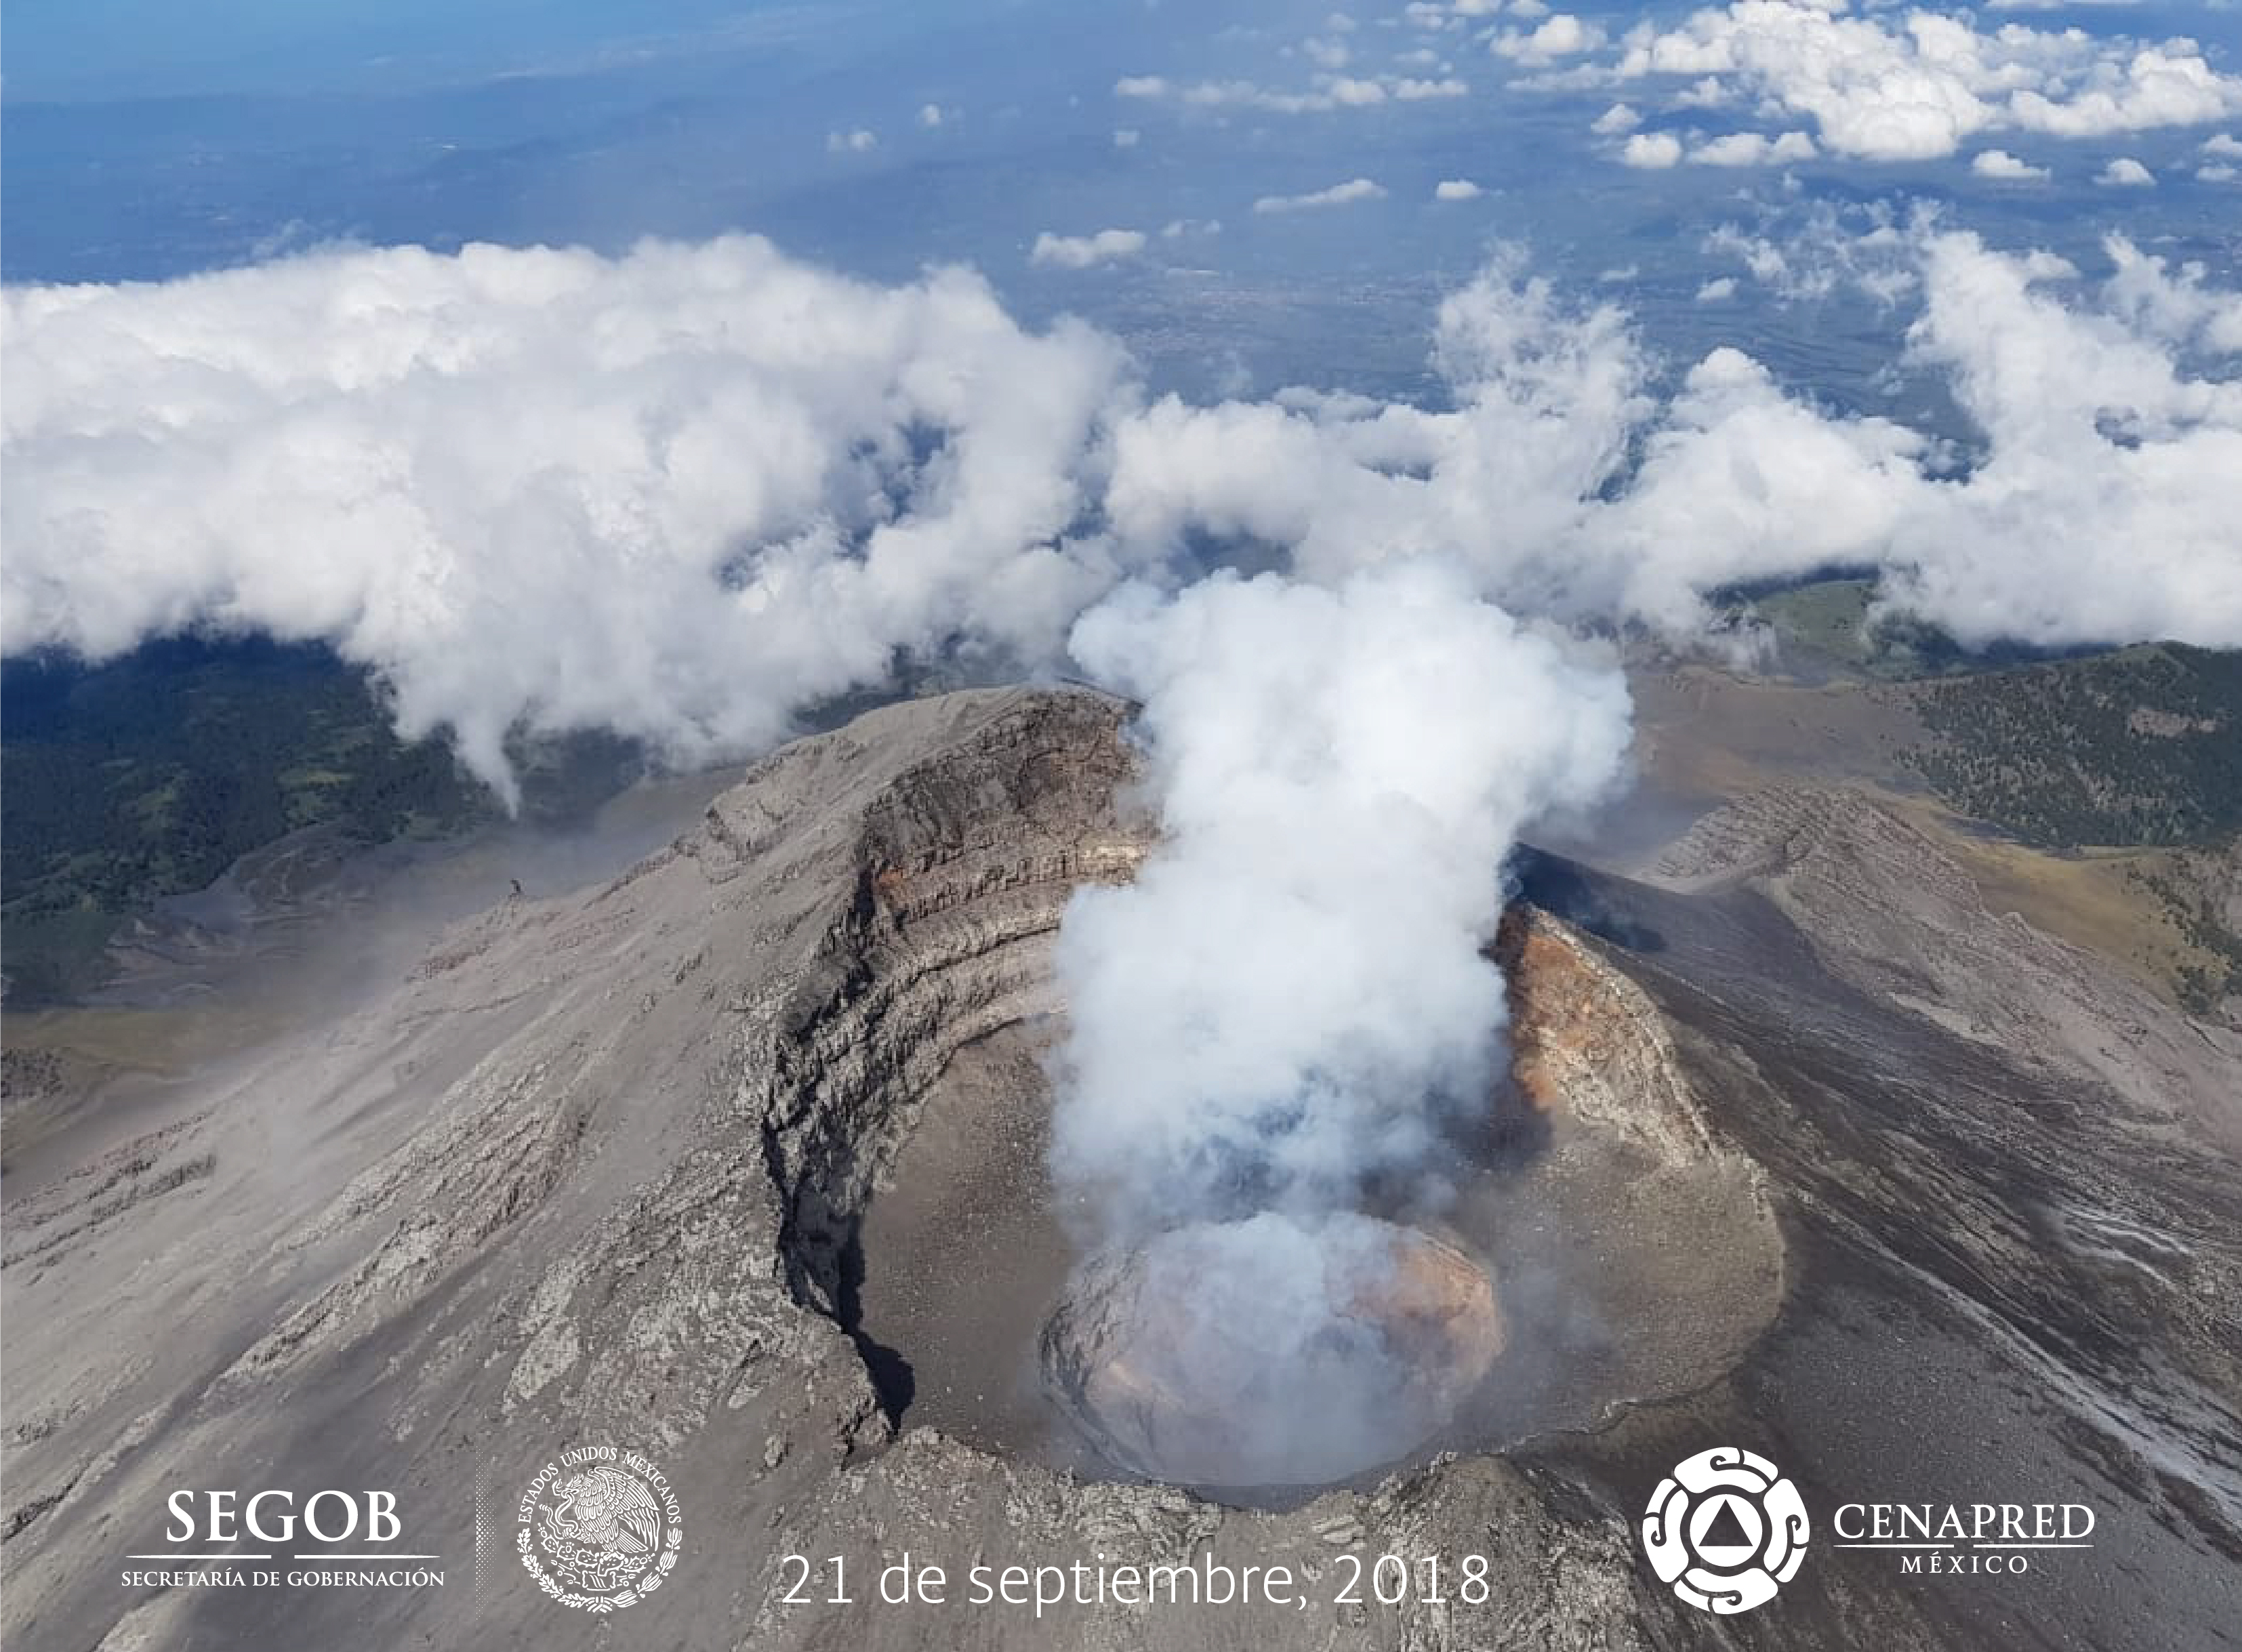 El día de hoy, con el apoyo de Policía Federal, se realizó un sobrevuelo de reconocimiento al volcán Popocatépetl. En el interior del cráter interno se observaron los restos del domo número 80, emplazado en agosto y destruido en las explosiones recientes.